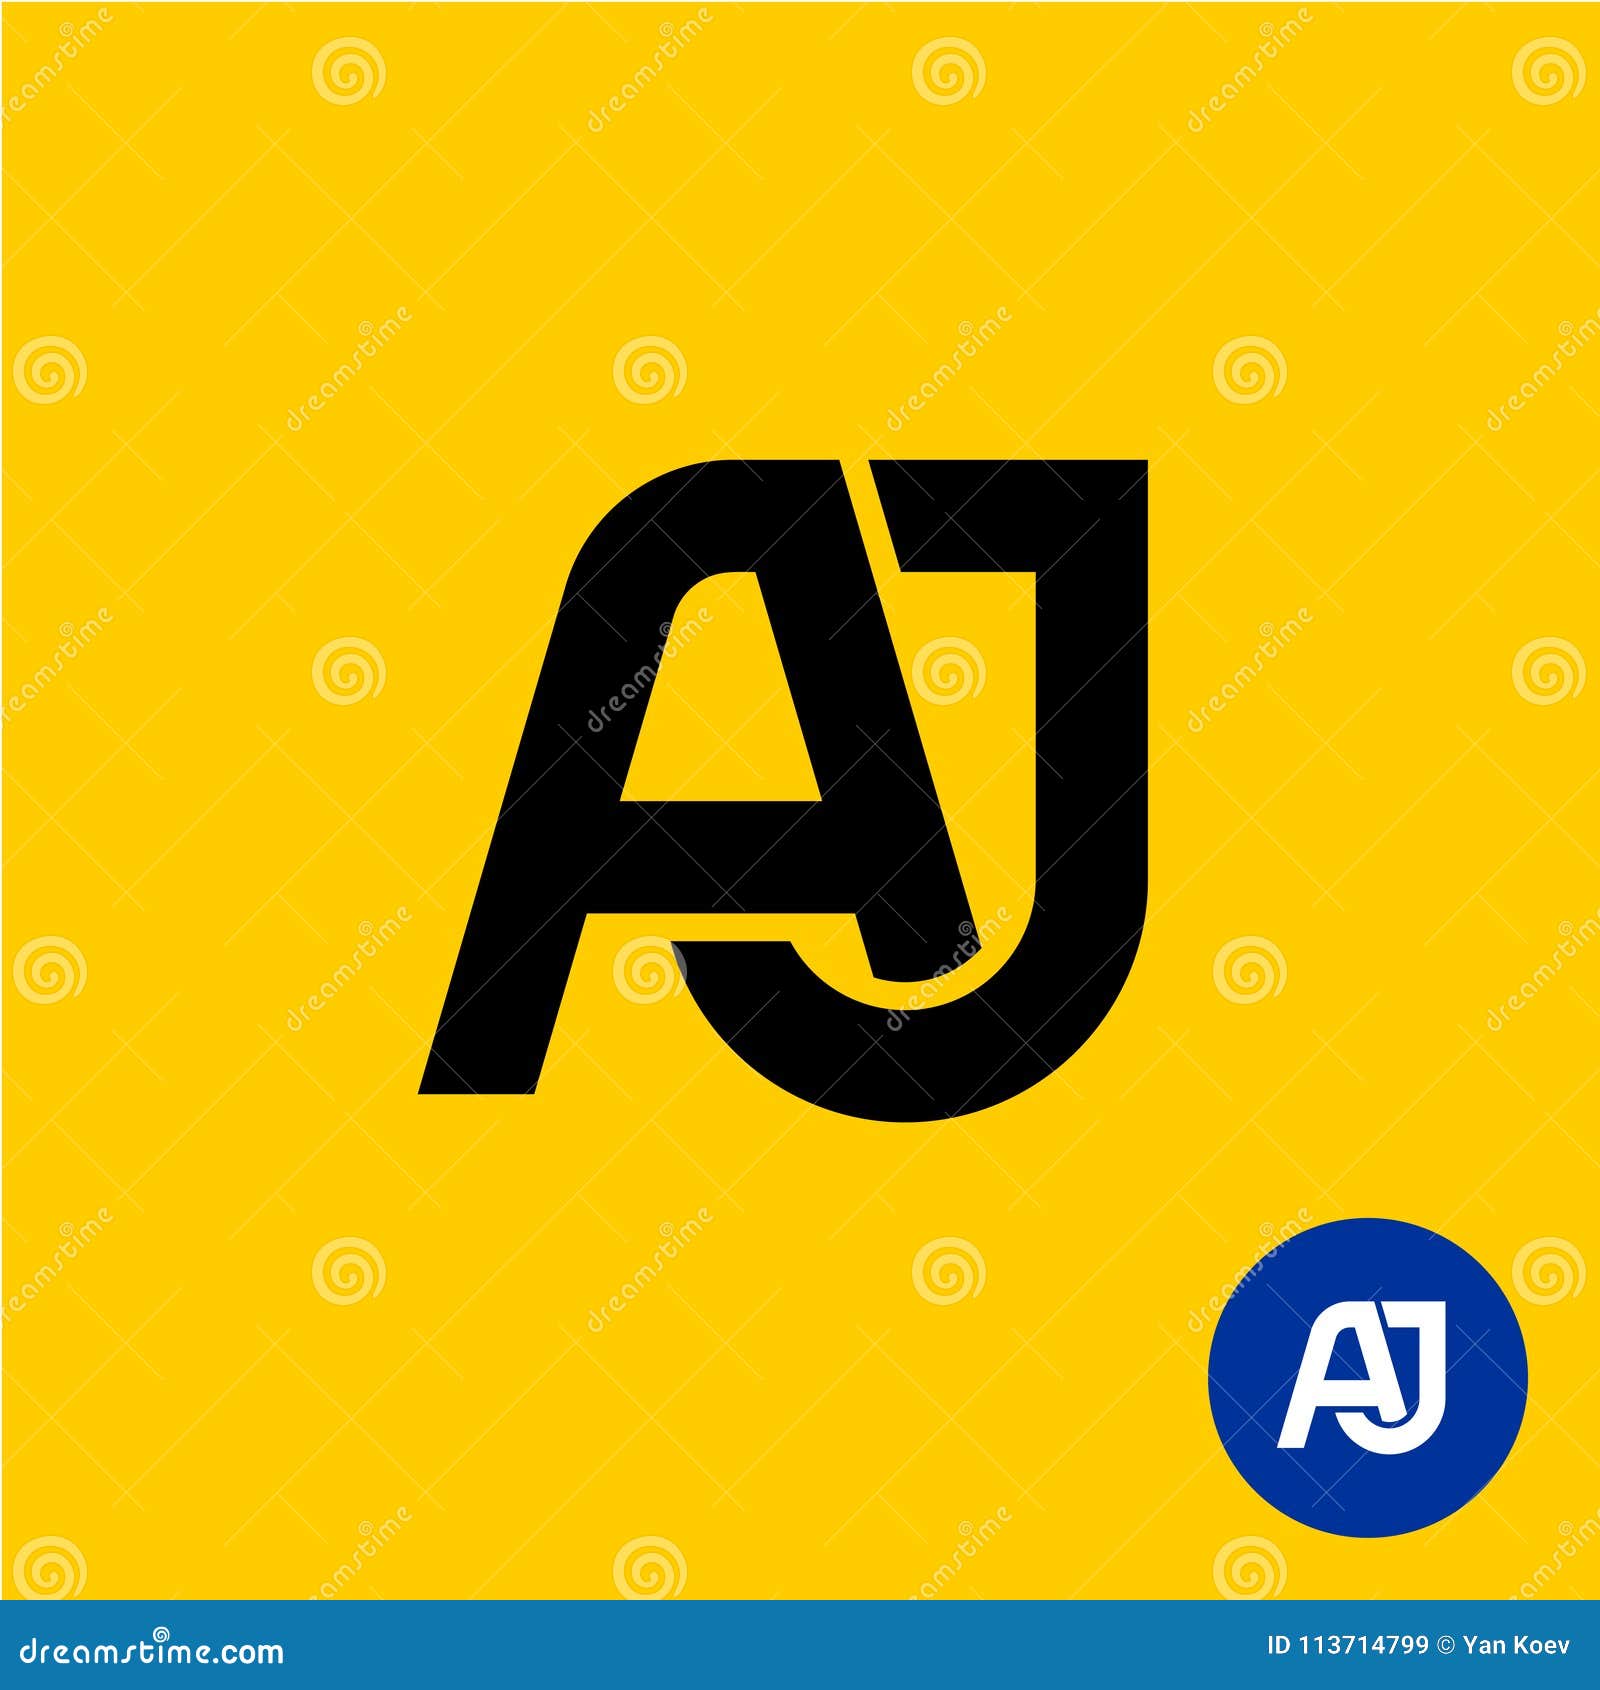 aj letters . a and j letters ligature.